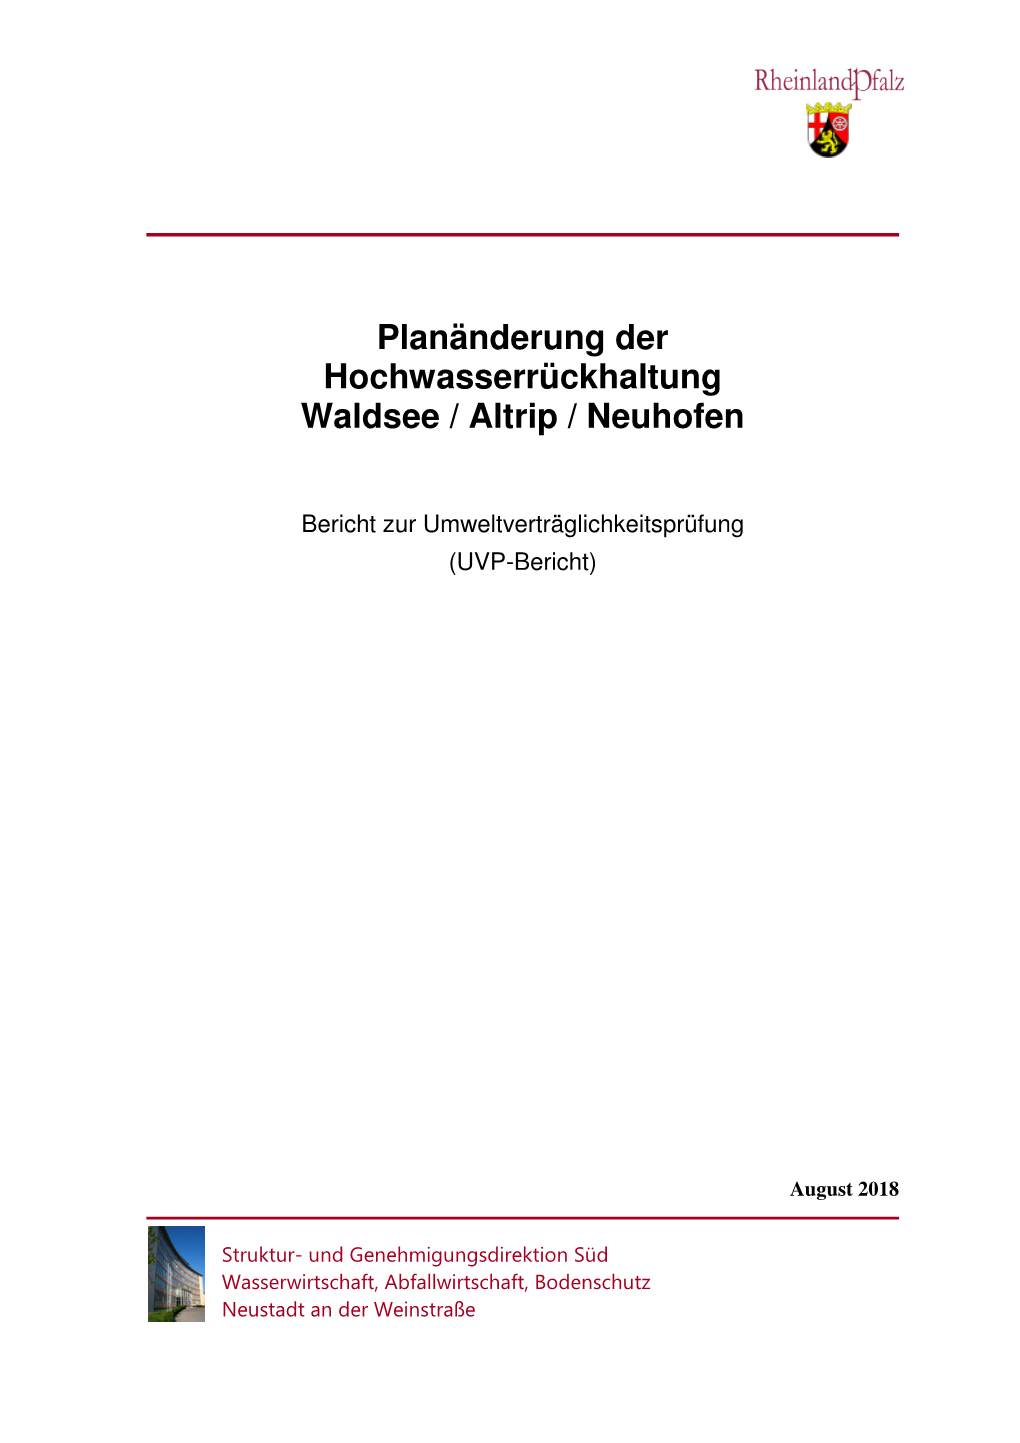 Planänderung Der Hochwasserrückhaltung Waldsee / Altrip / Neuhofen